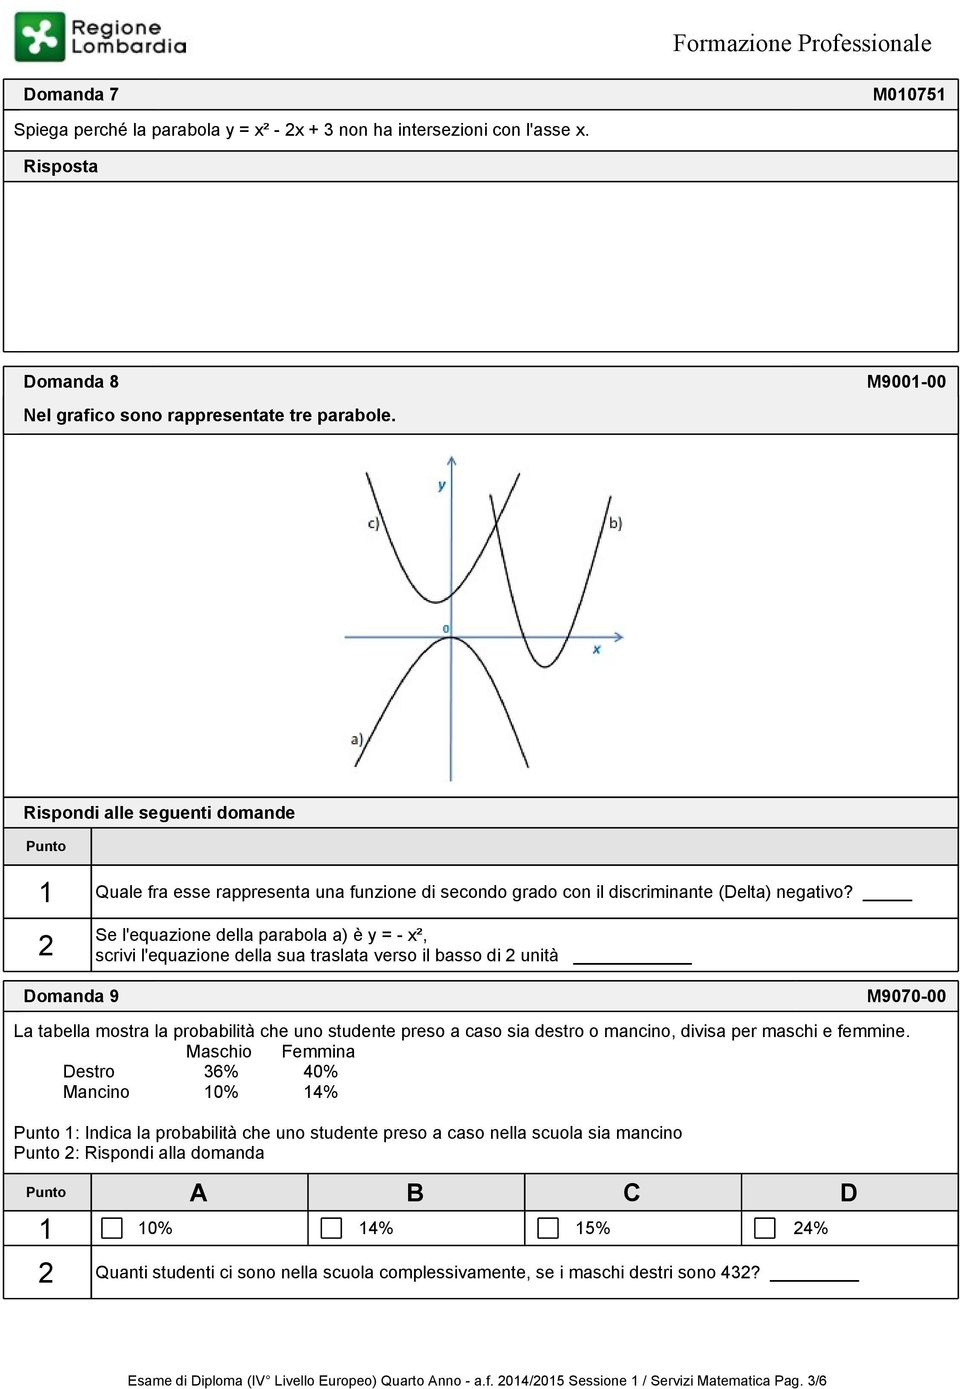 2 Se l'equazione della parabola a) è y = - x², scrivi l'equazione della sua traslata verso il basso di 2 unità omanda 9 M9070-00 La tabella mostra la probabilità che uno studente preso a caso sia